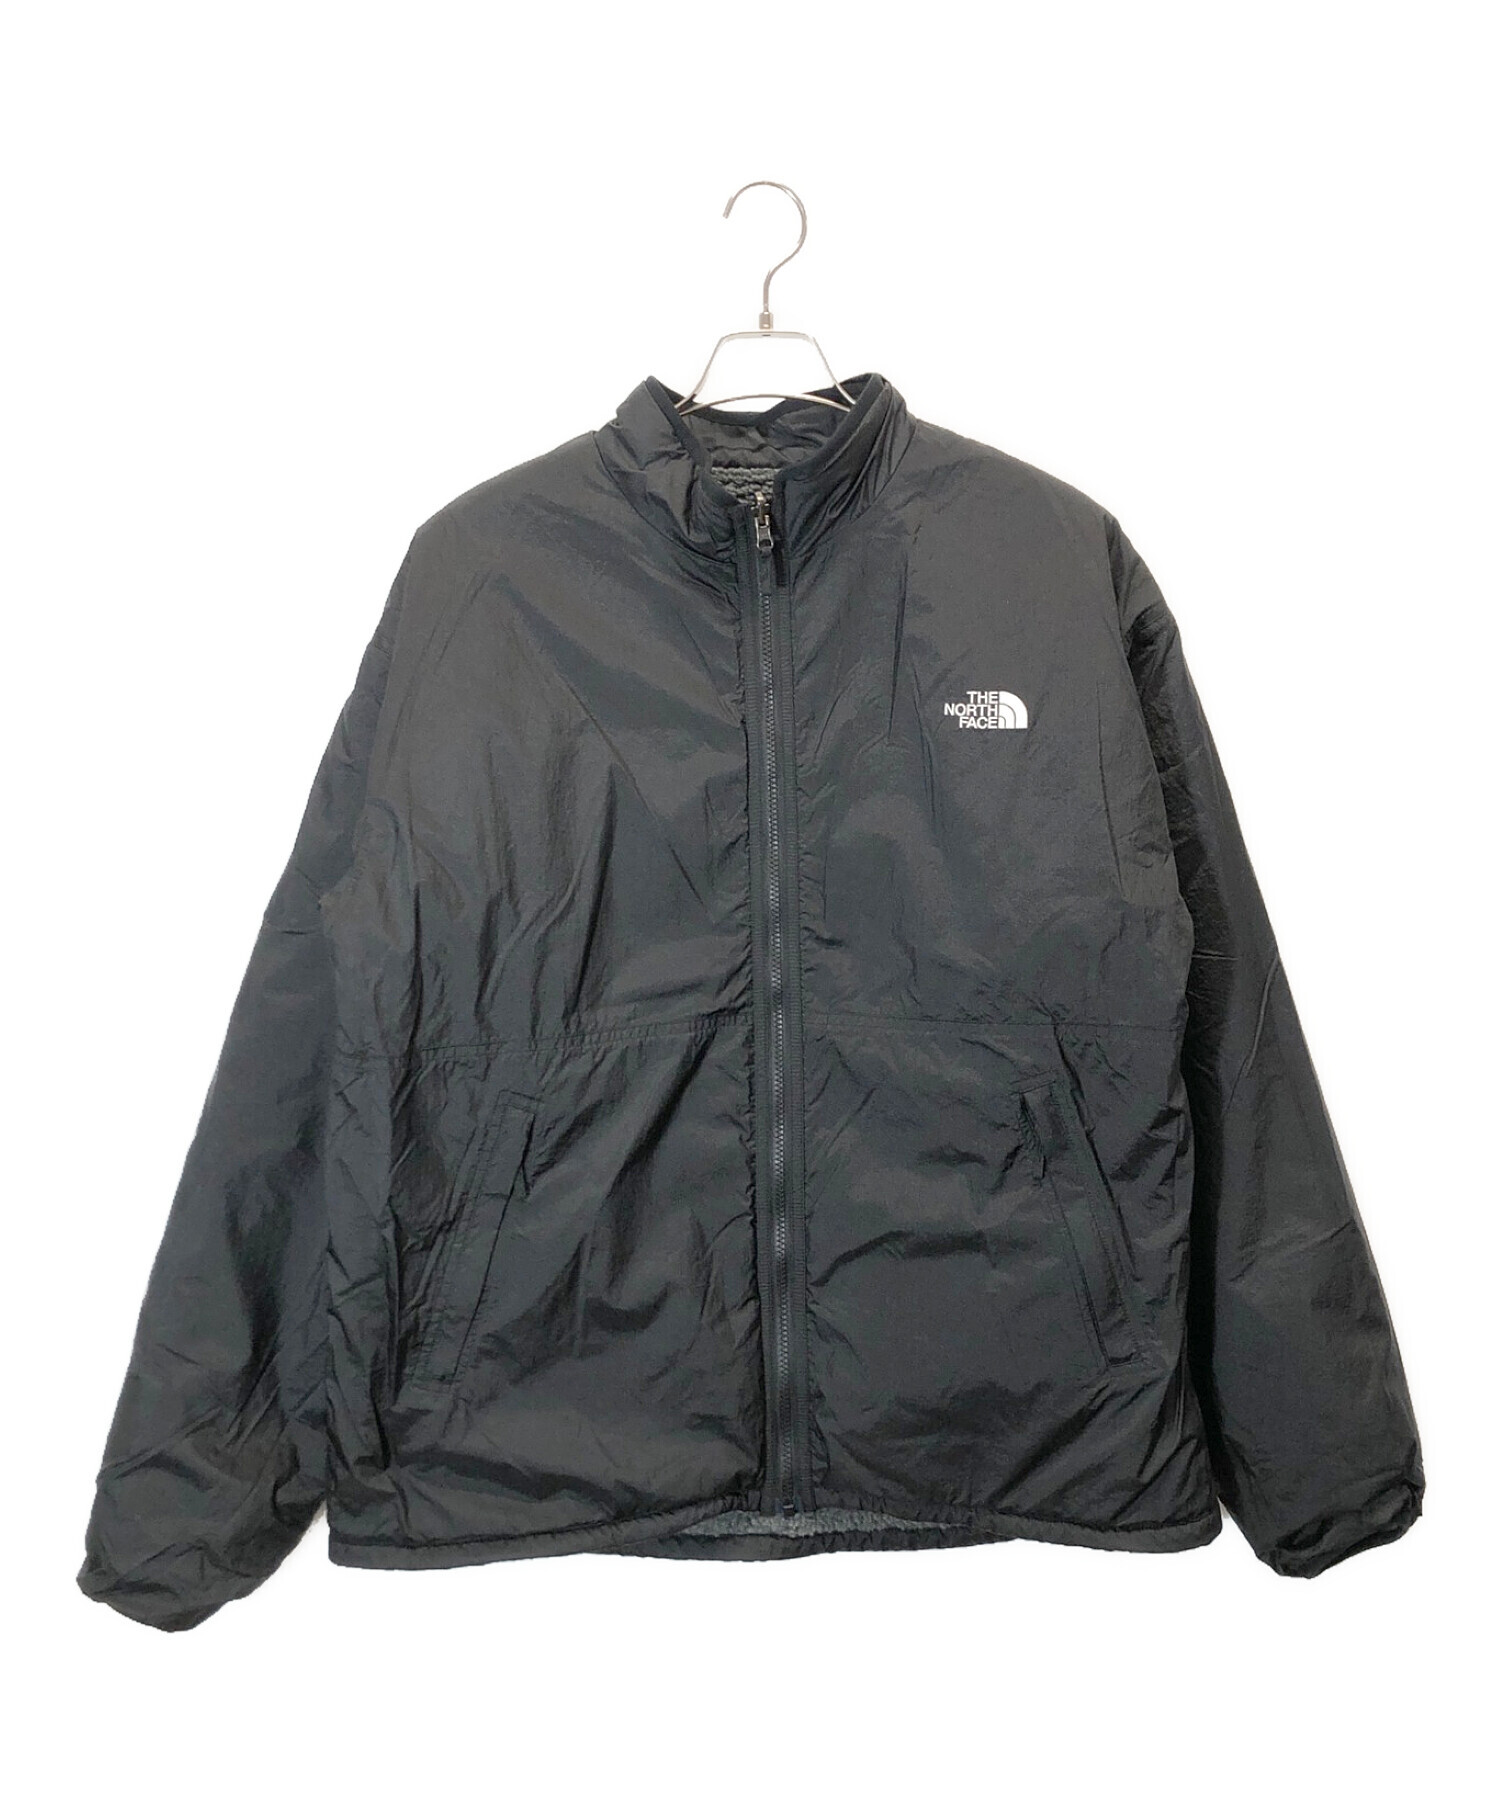 ジャケット/アウターTHE NORTH FACE (ザ ノース フェイス) リバーシブルエクストリームパイルジャケット グレー×ブラック サイズ:XL 14760円